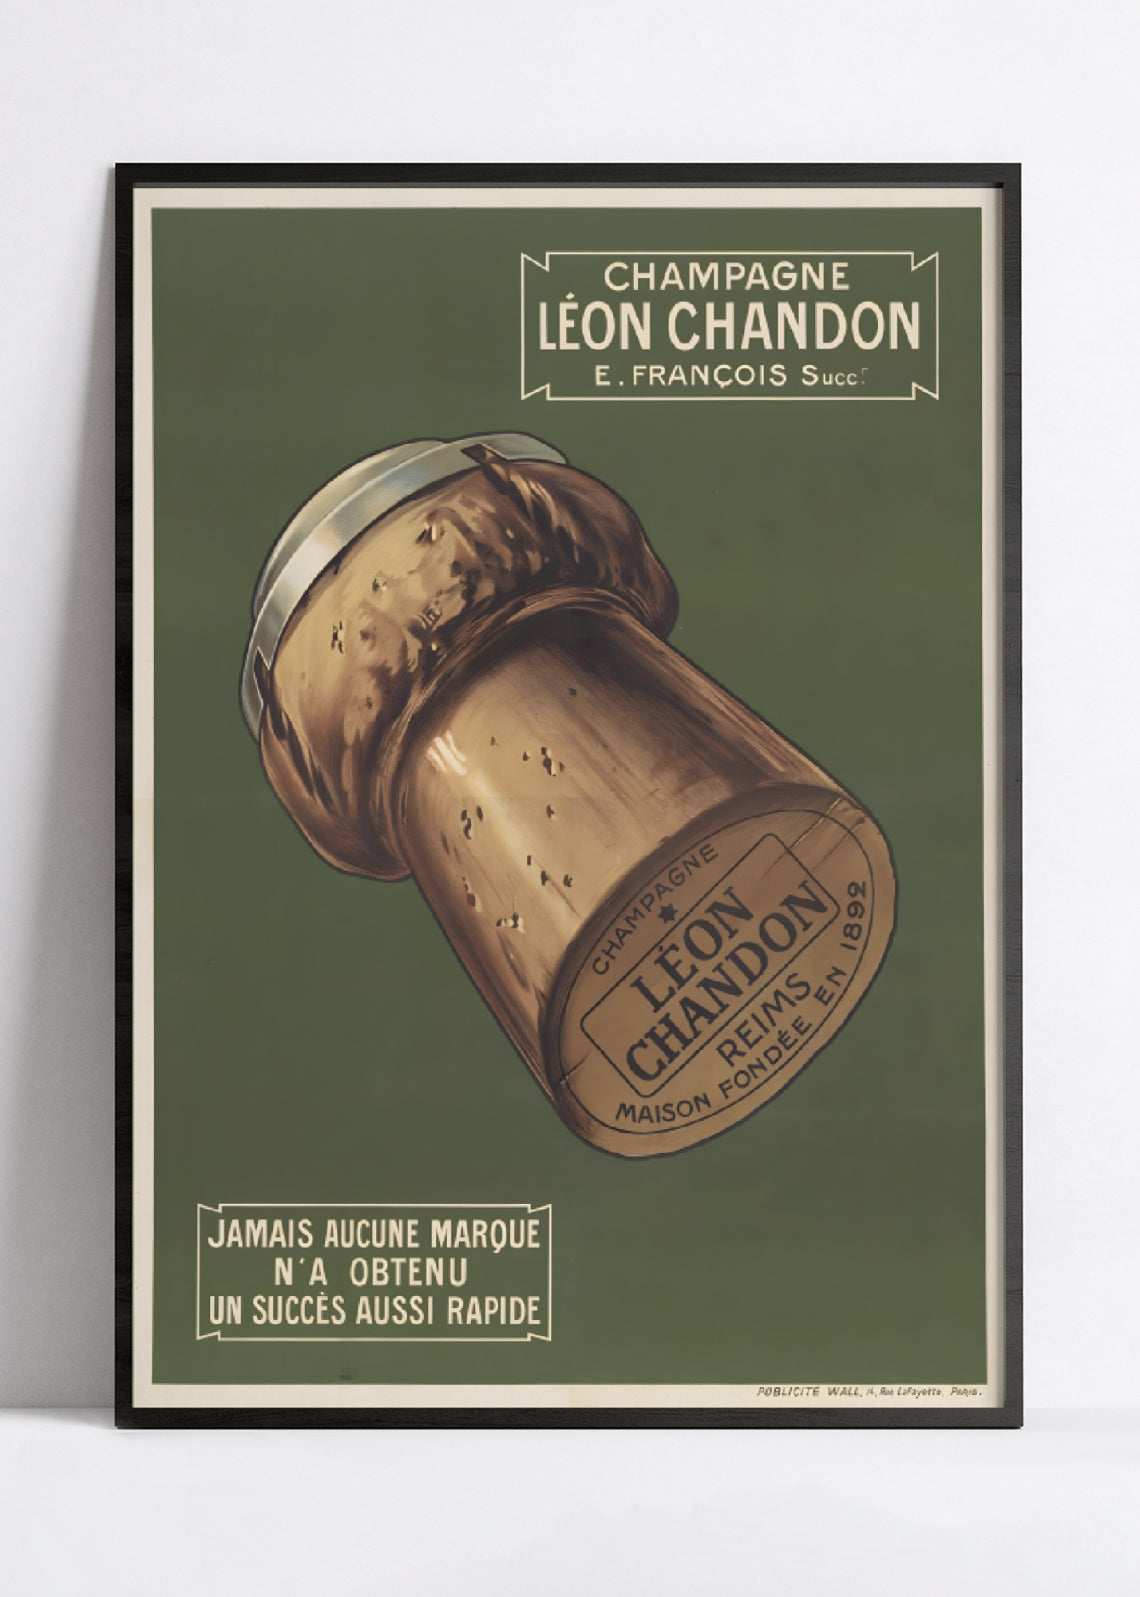 Affiche alcool vintage champagne "Léon Chandon" - Haute Définition - papier mat 230gr/m2